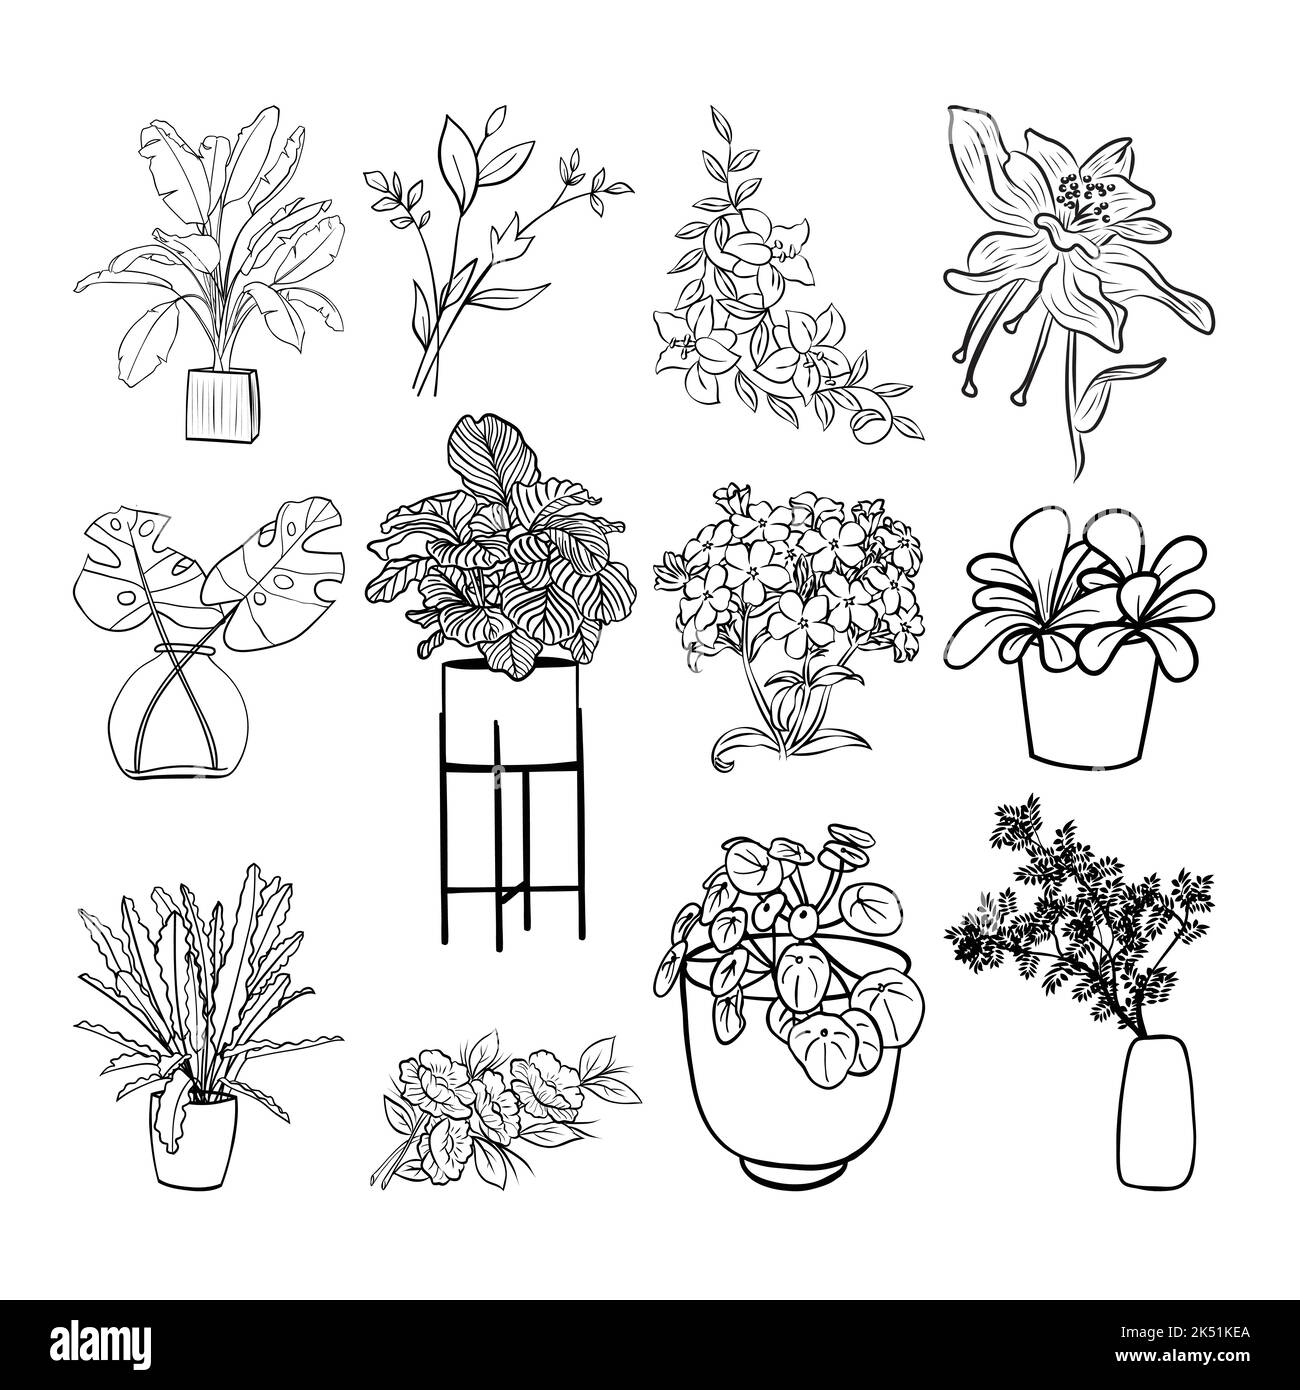 Florale Grafikelemente im großen Vektor-Set. Blumen und Pflanzen handgezeichnete Illustrationen Stock Vektor